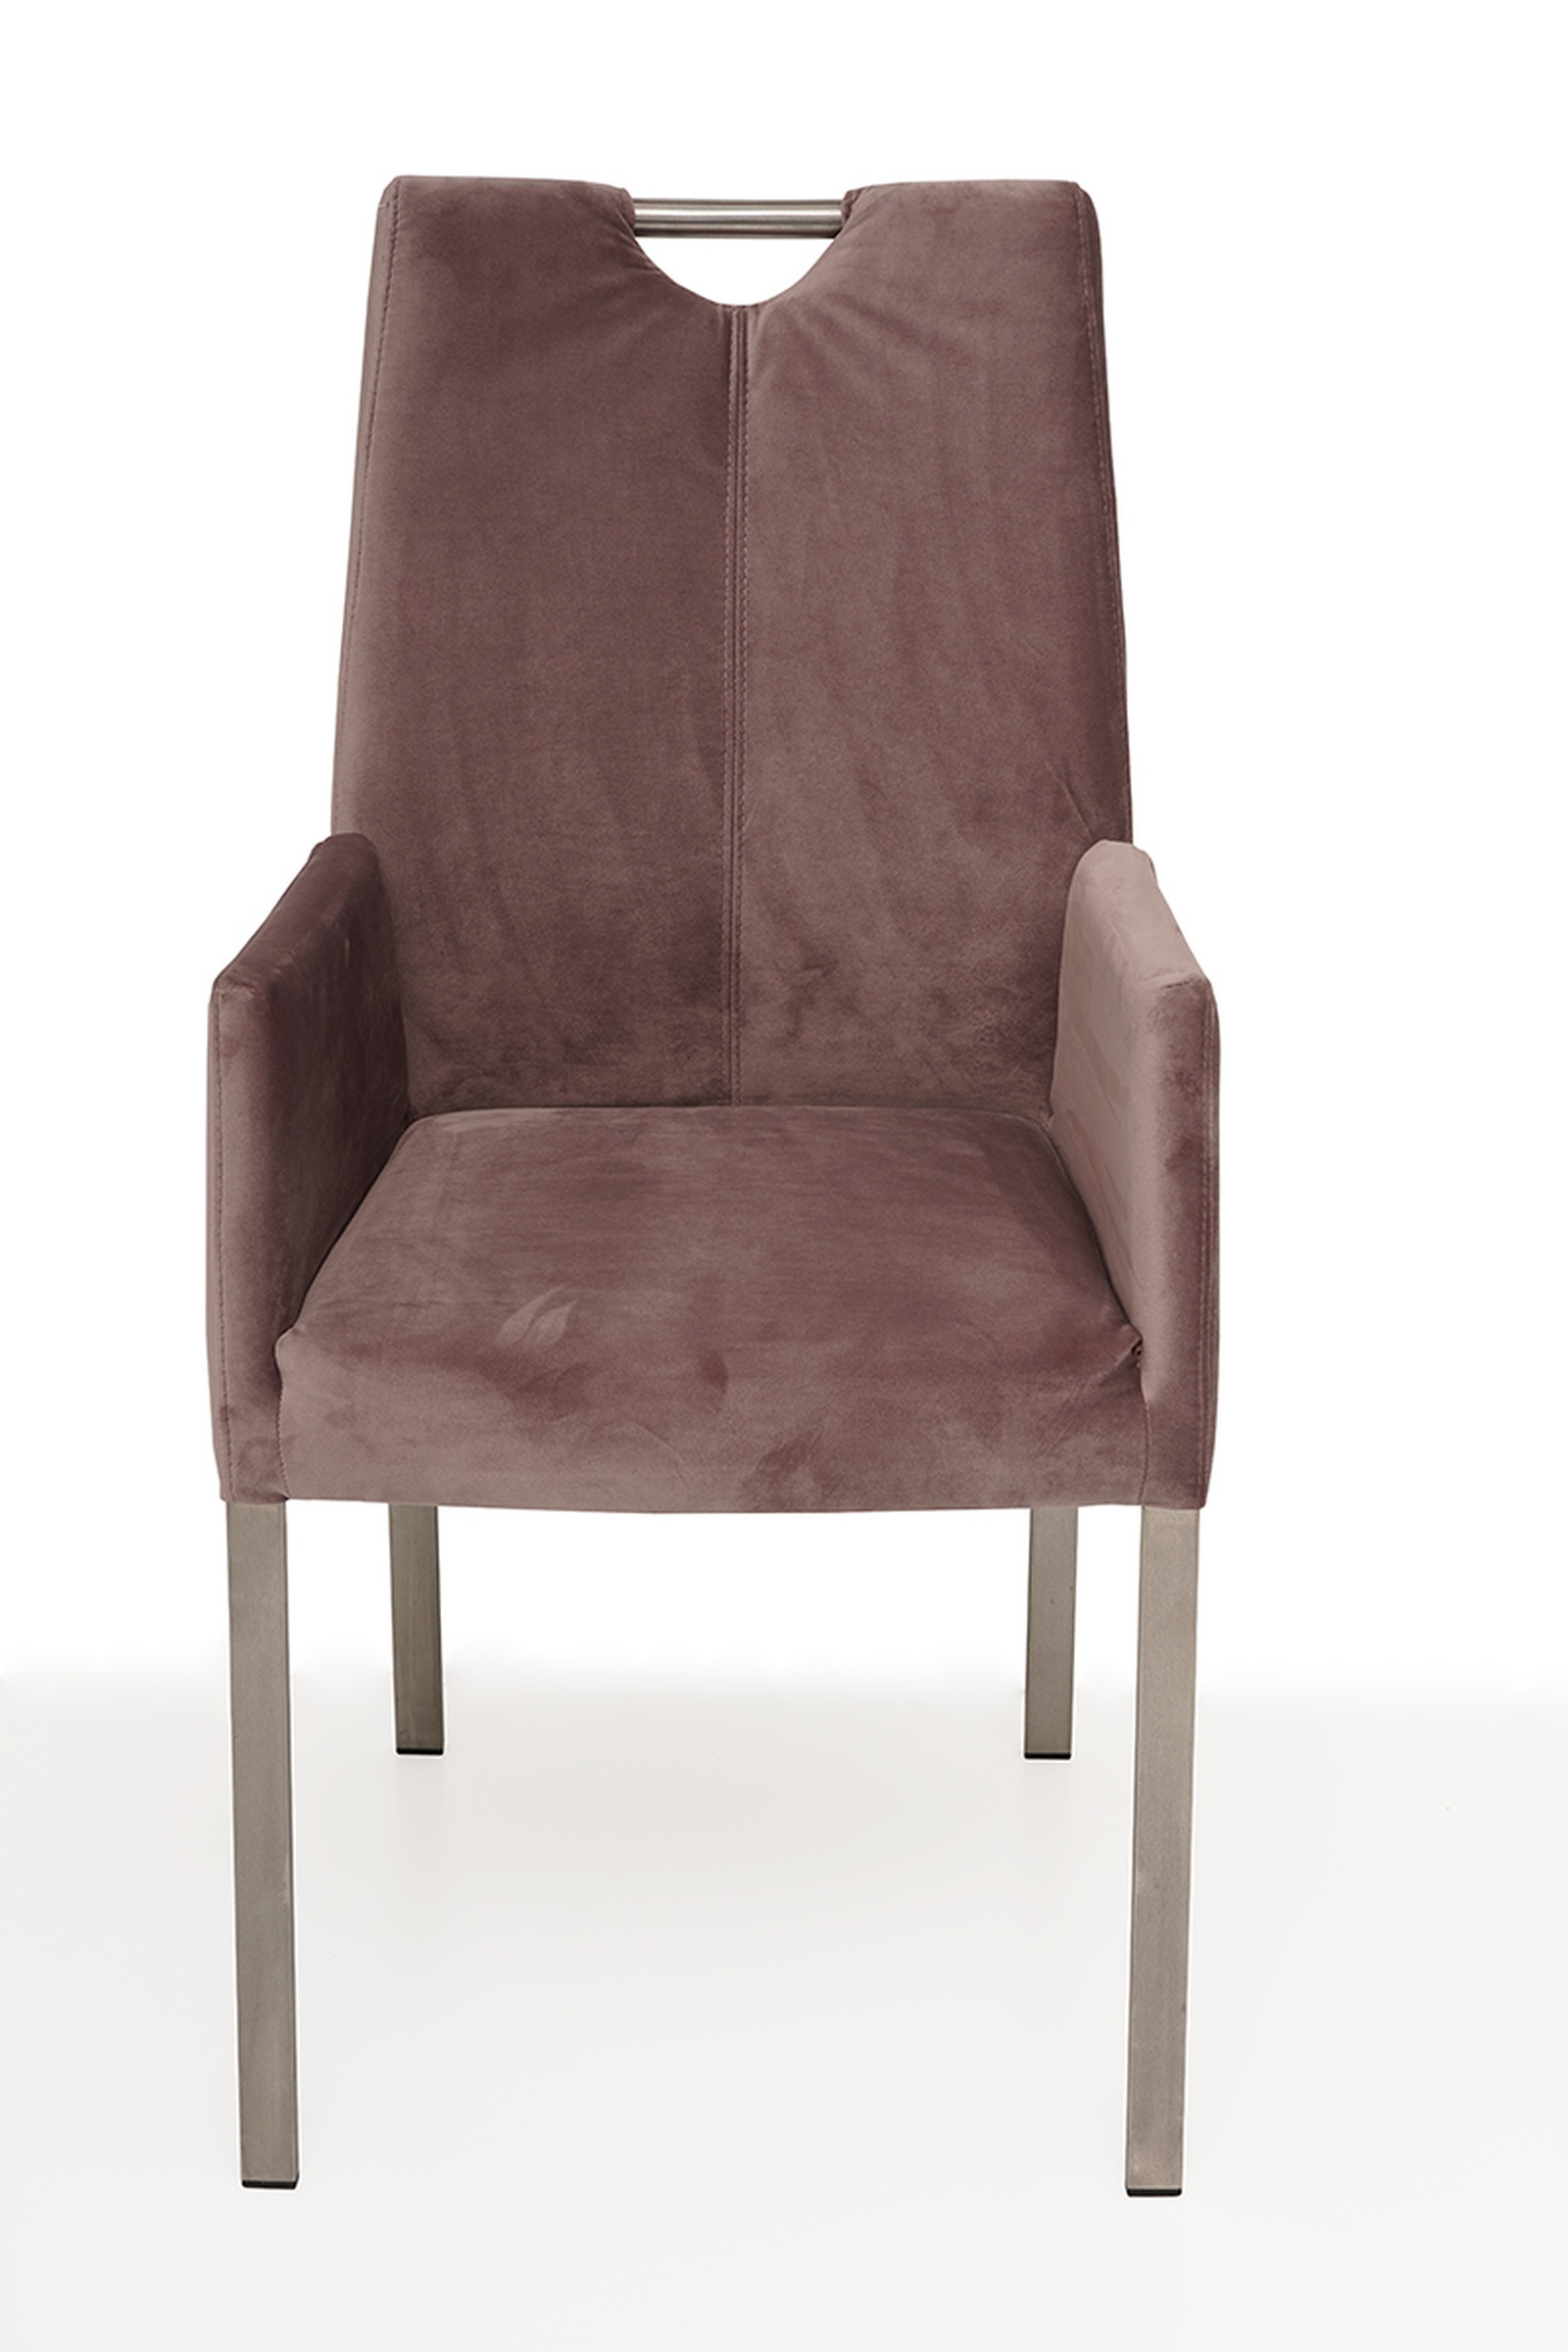 Nowoczesne krzesło tapicerowane na metalowych nogach z pdłokietnikami 2